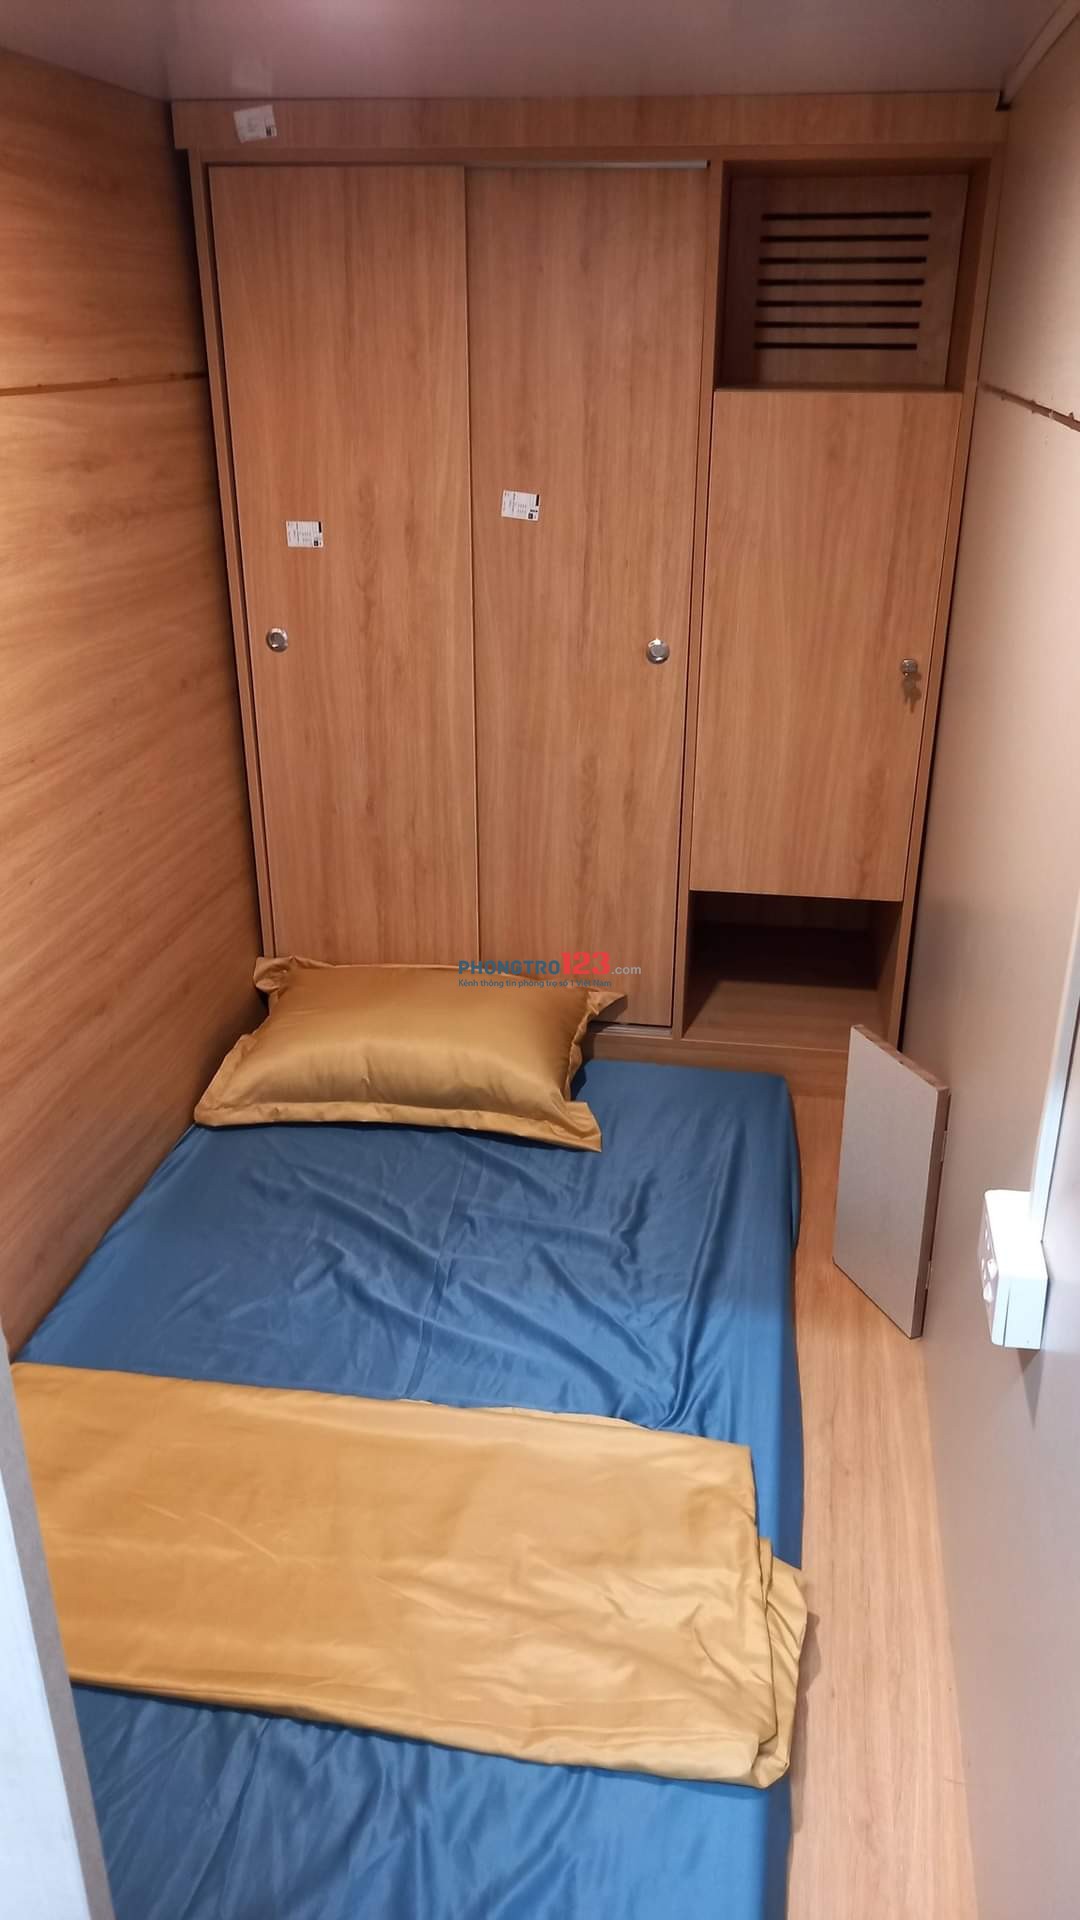 Cho thuê phòng đơn SLEEPBOX 1 người, đẹp, giá rẻ 990k/ tháng